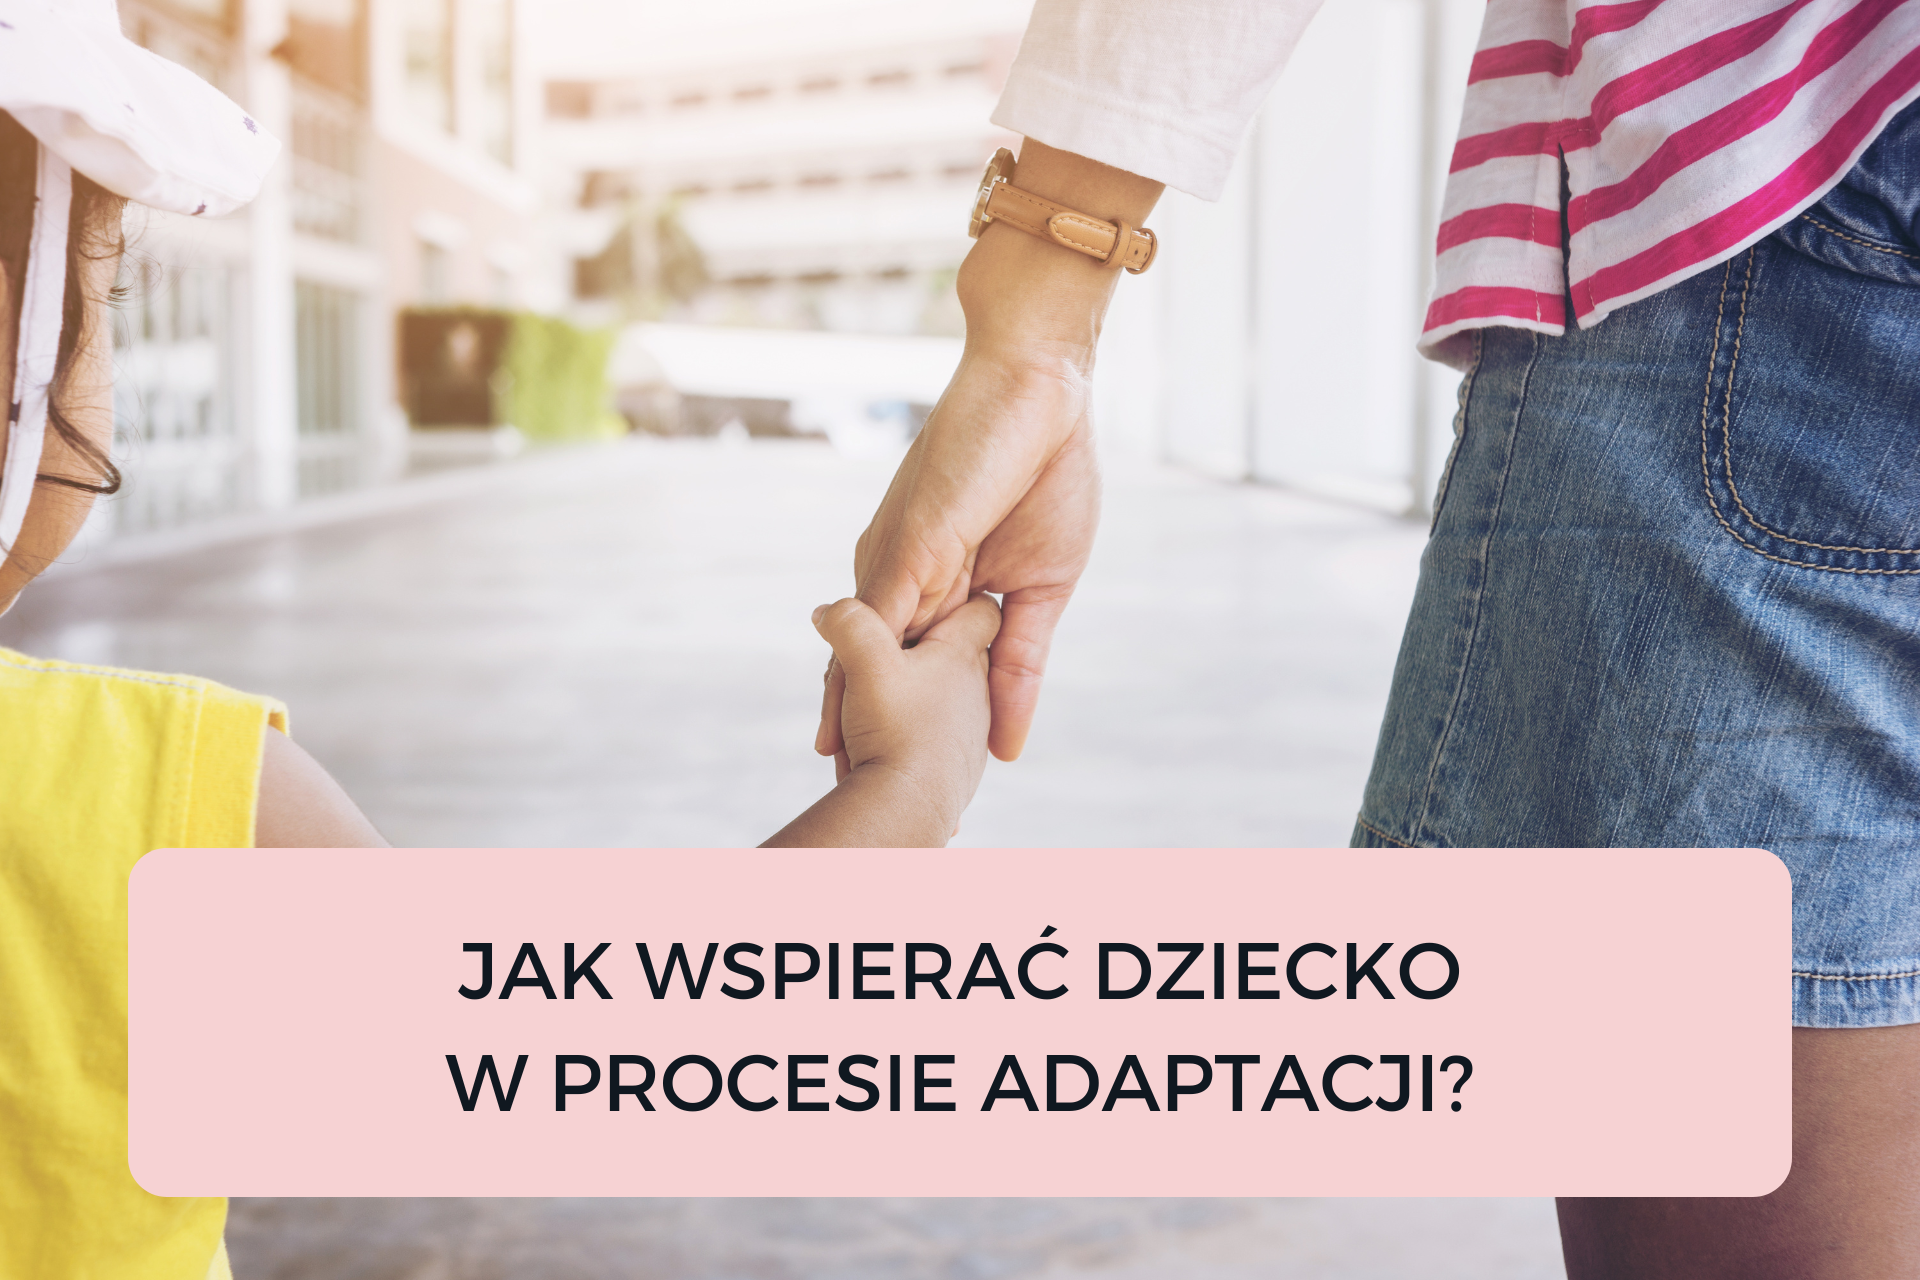 You are currently viewing JAK WSPIERAĆ DZIECKO W PROCESIE ADAPTACJI?